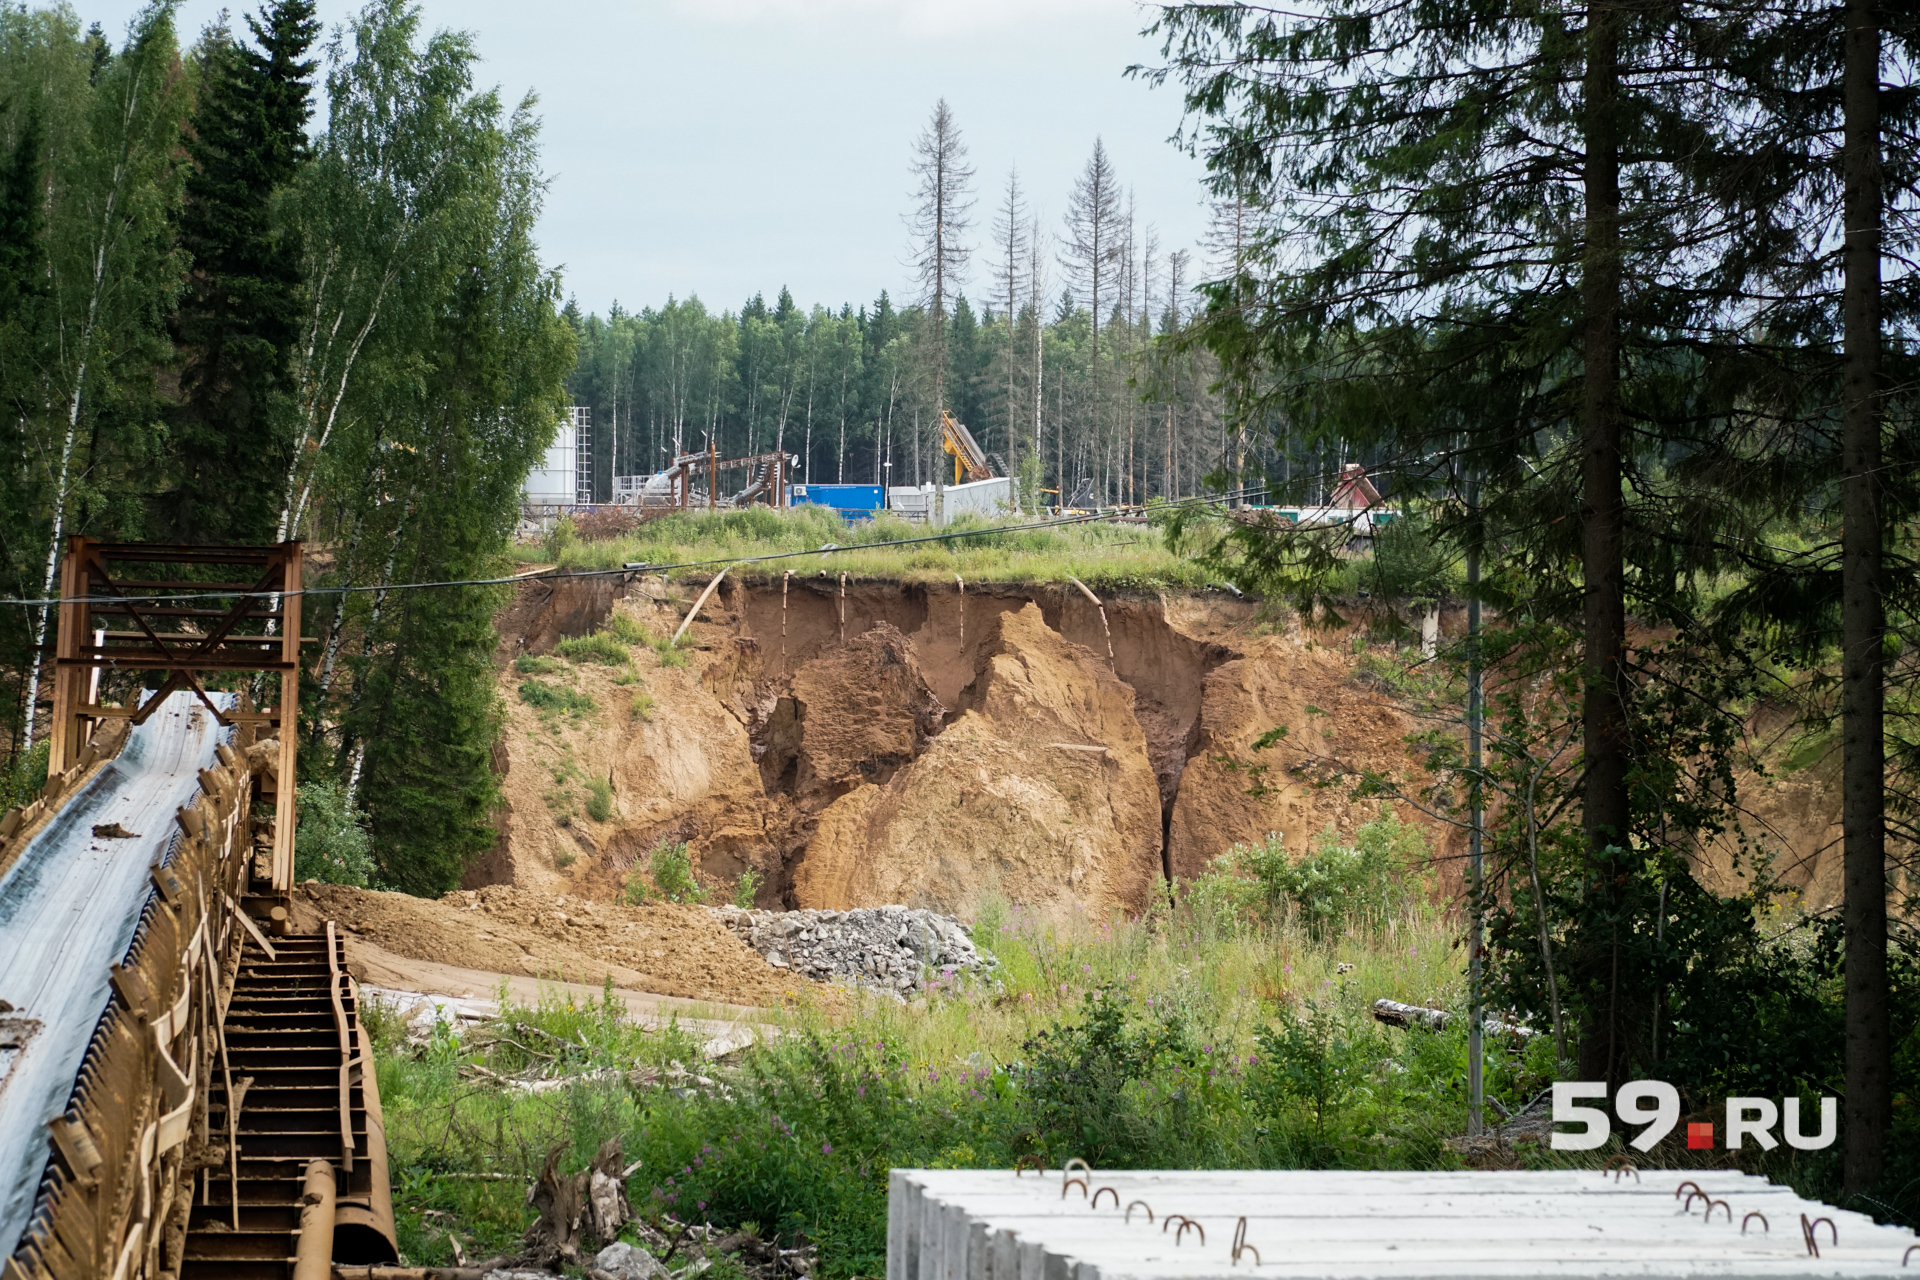 Ошибка при добыче или тектонический сдвиг? Что могло стать причиной подтопления рудника в Соликамске